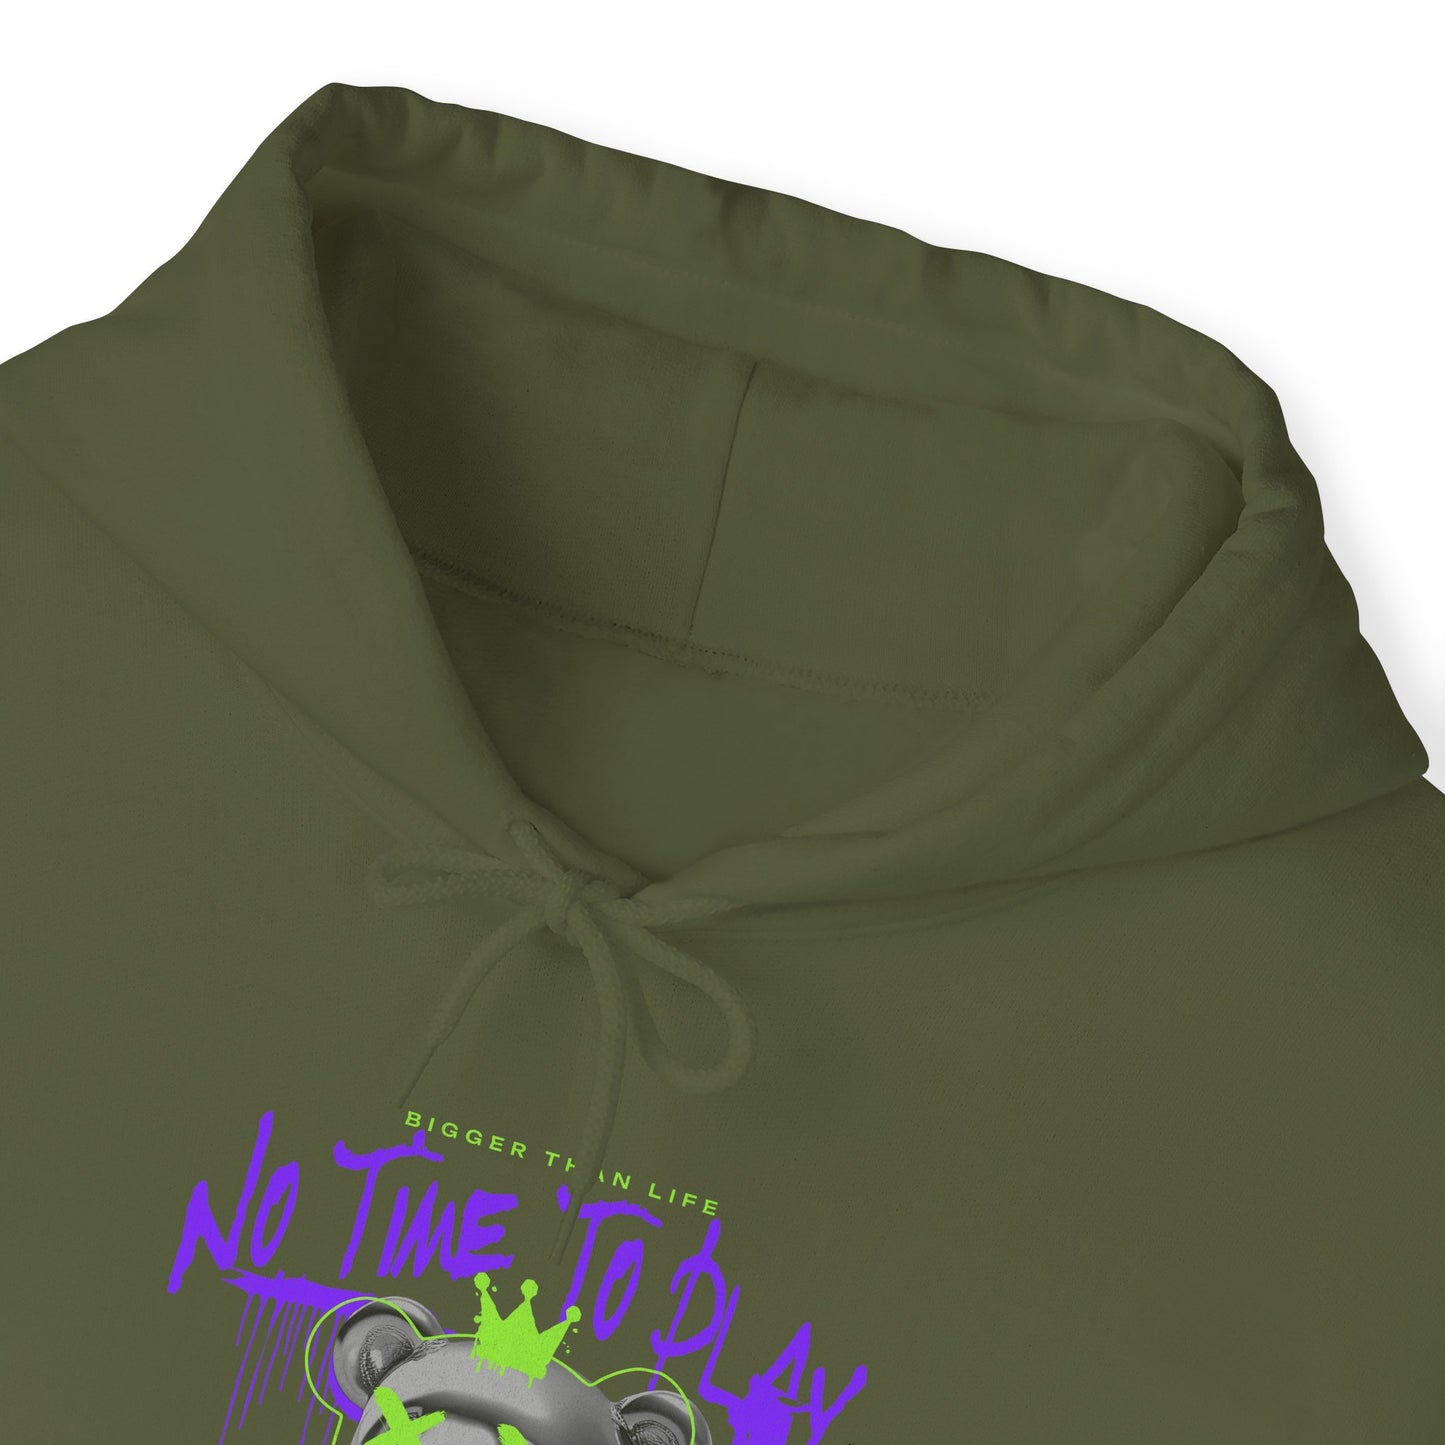 Hustle Bear Unisex Heavy Blend™ Hooded Sweatshirt